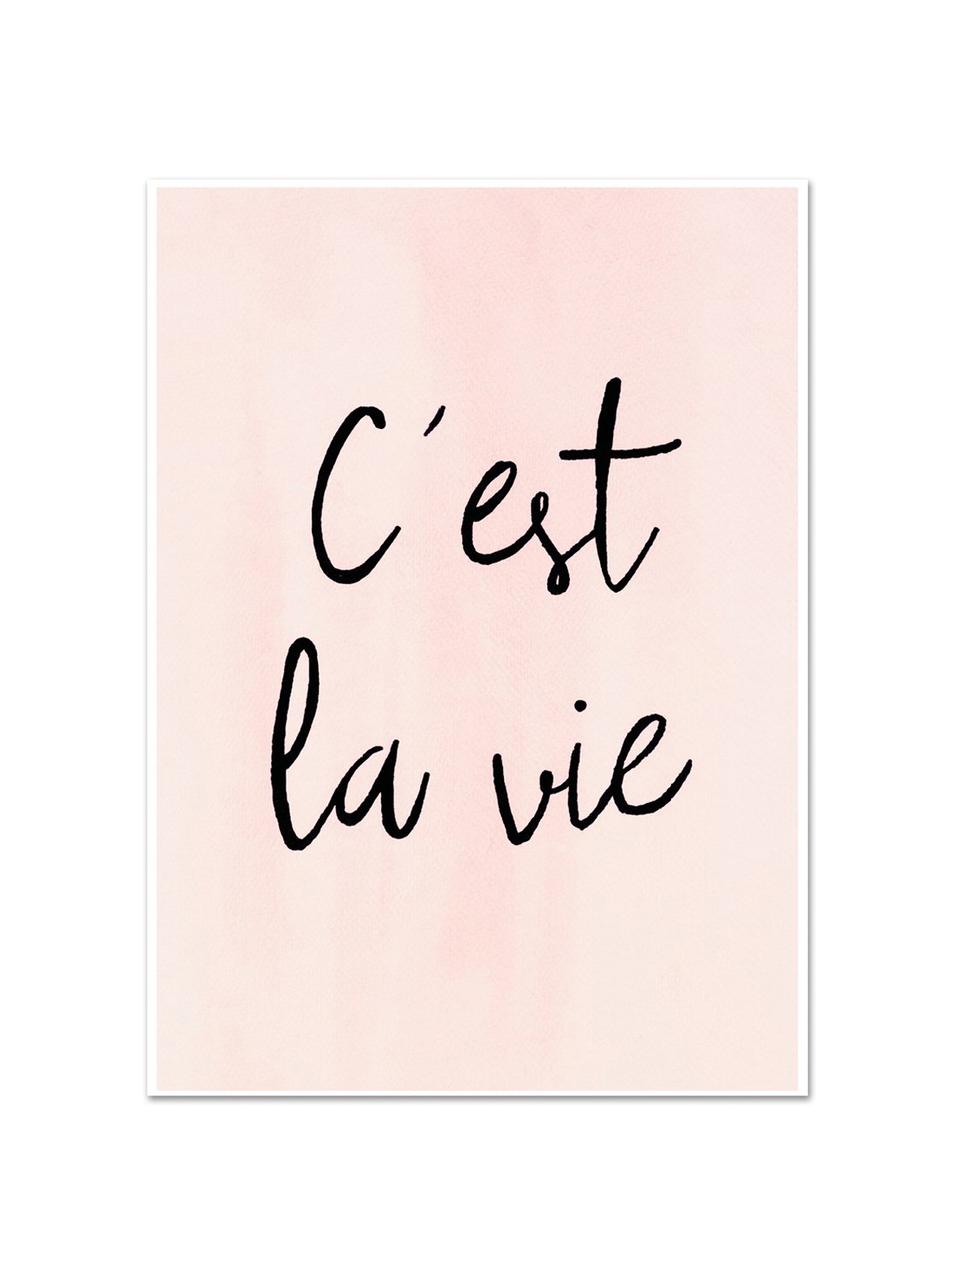 Plakát C'est La Vie, Digitální tisk na papír, 200 g/m², Růžová, černá, Š 30 cm, V 42 cm